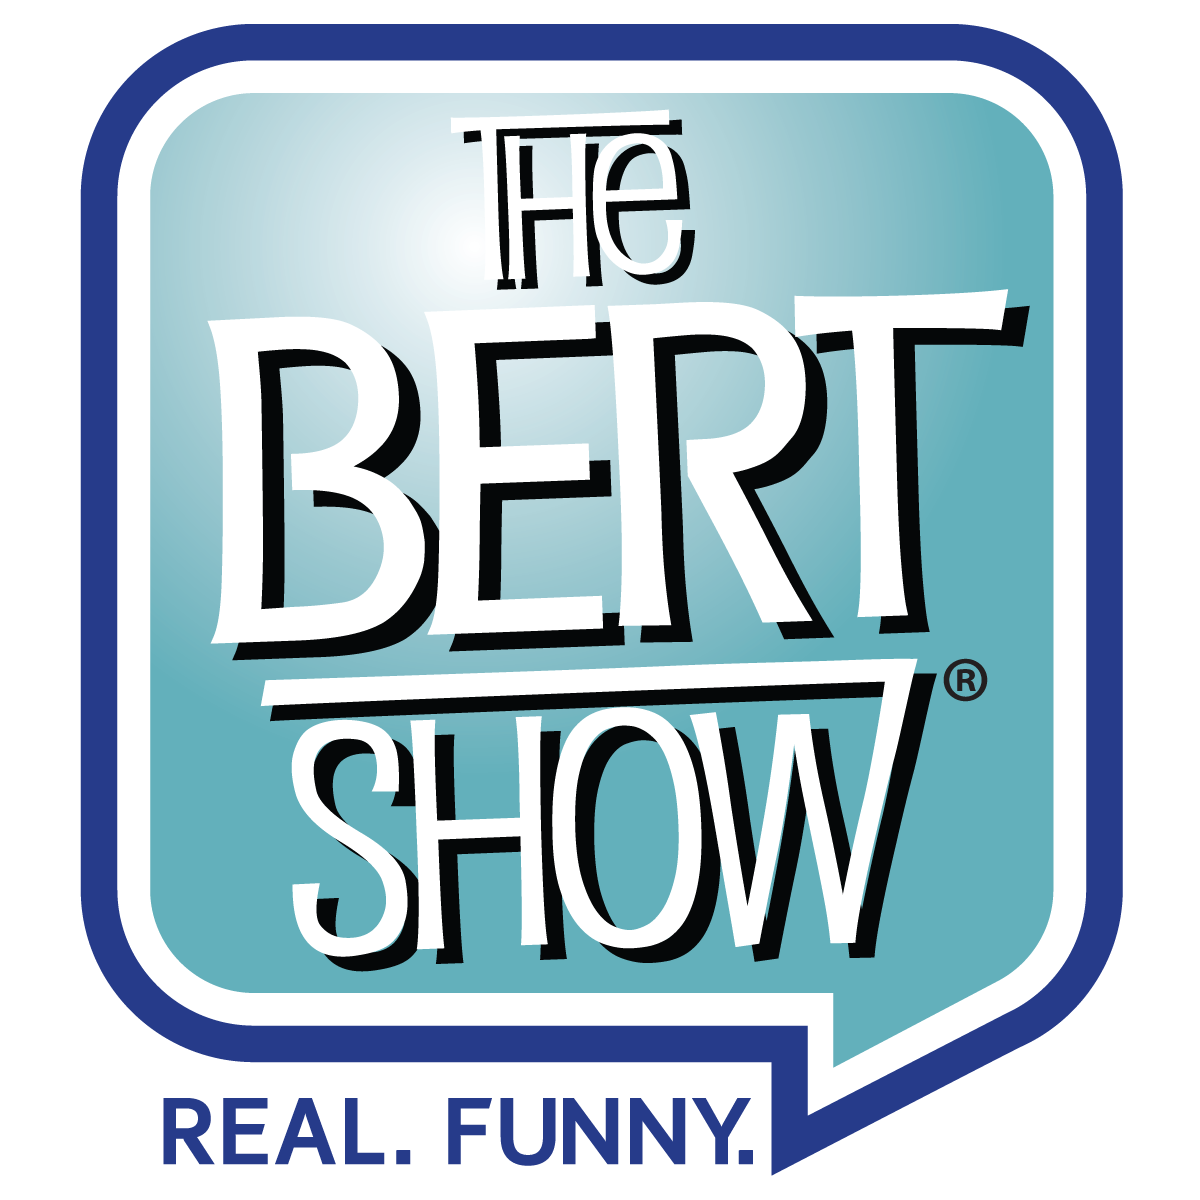 The Bert Show logo